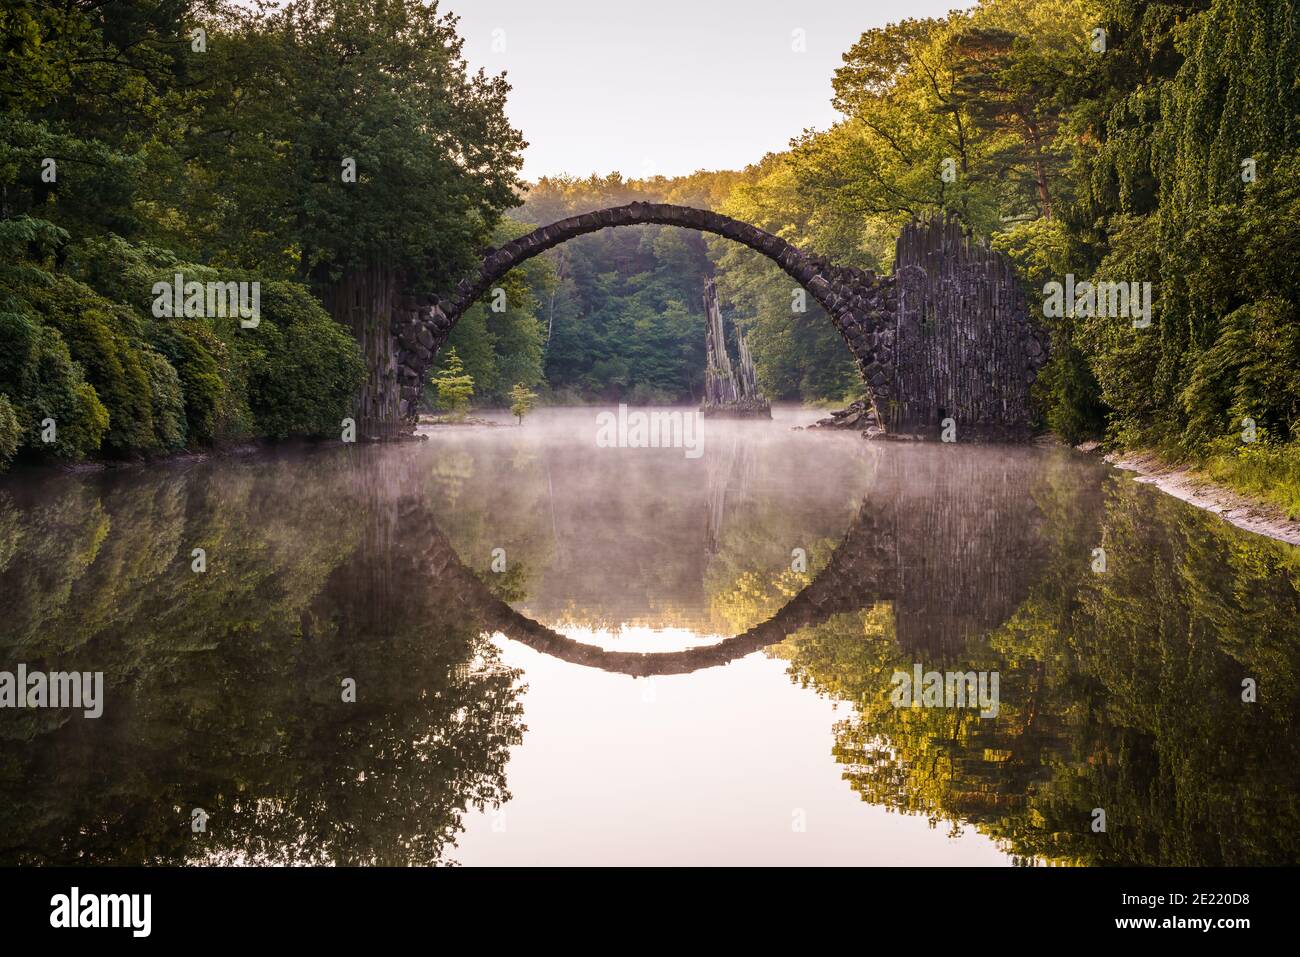 Medieval Rakotz Bridge in Gablenz Germany Stock Photo